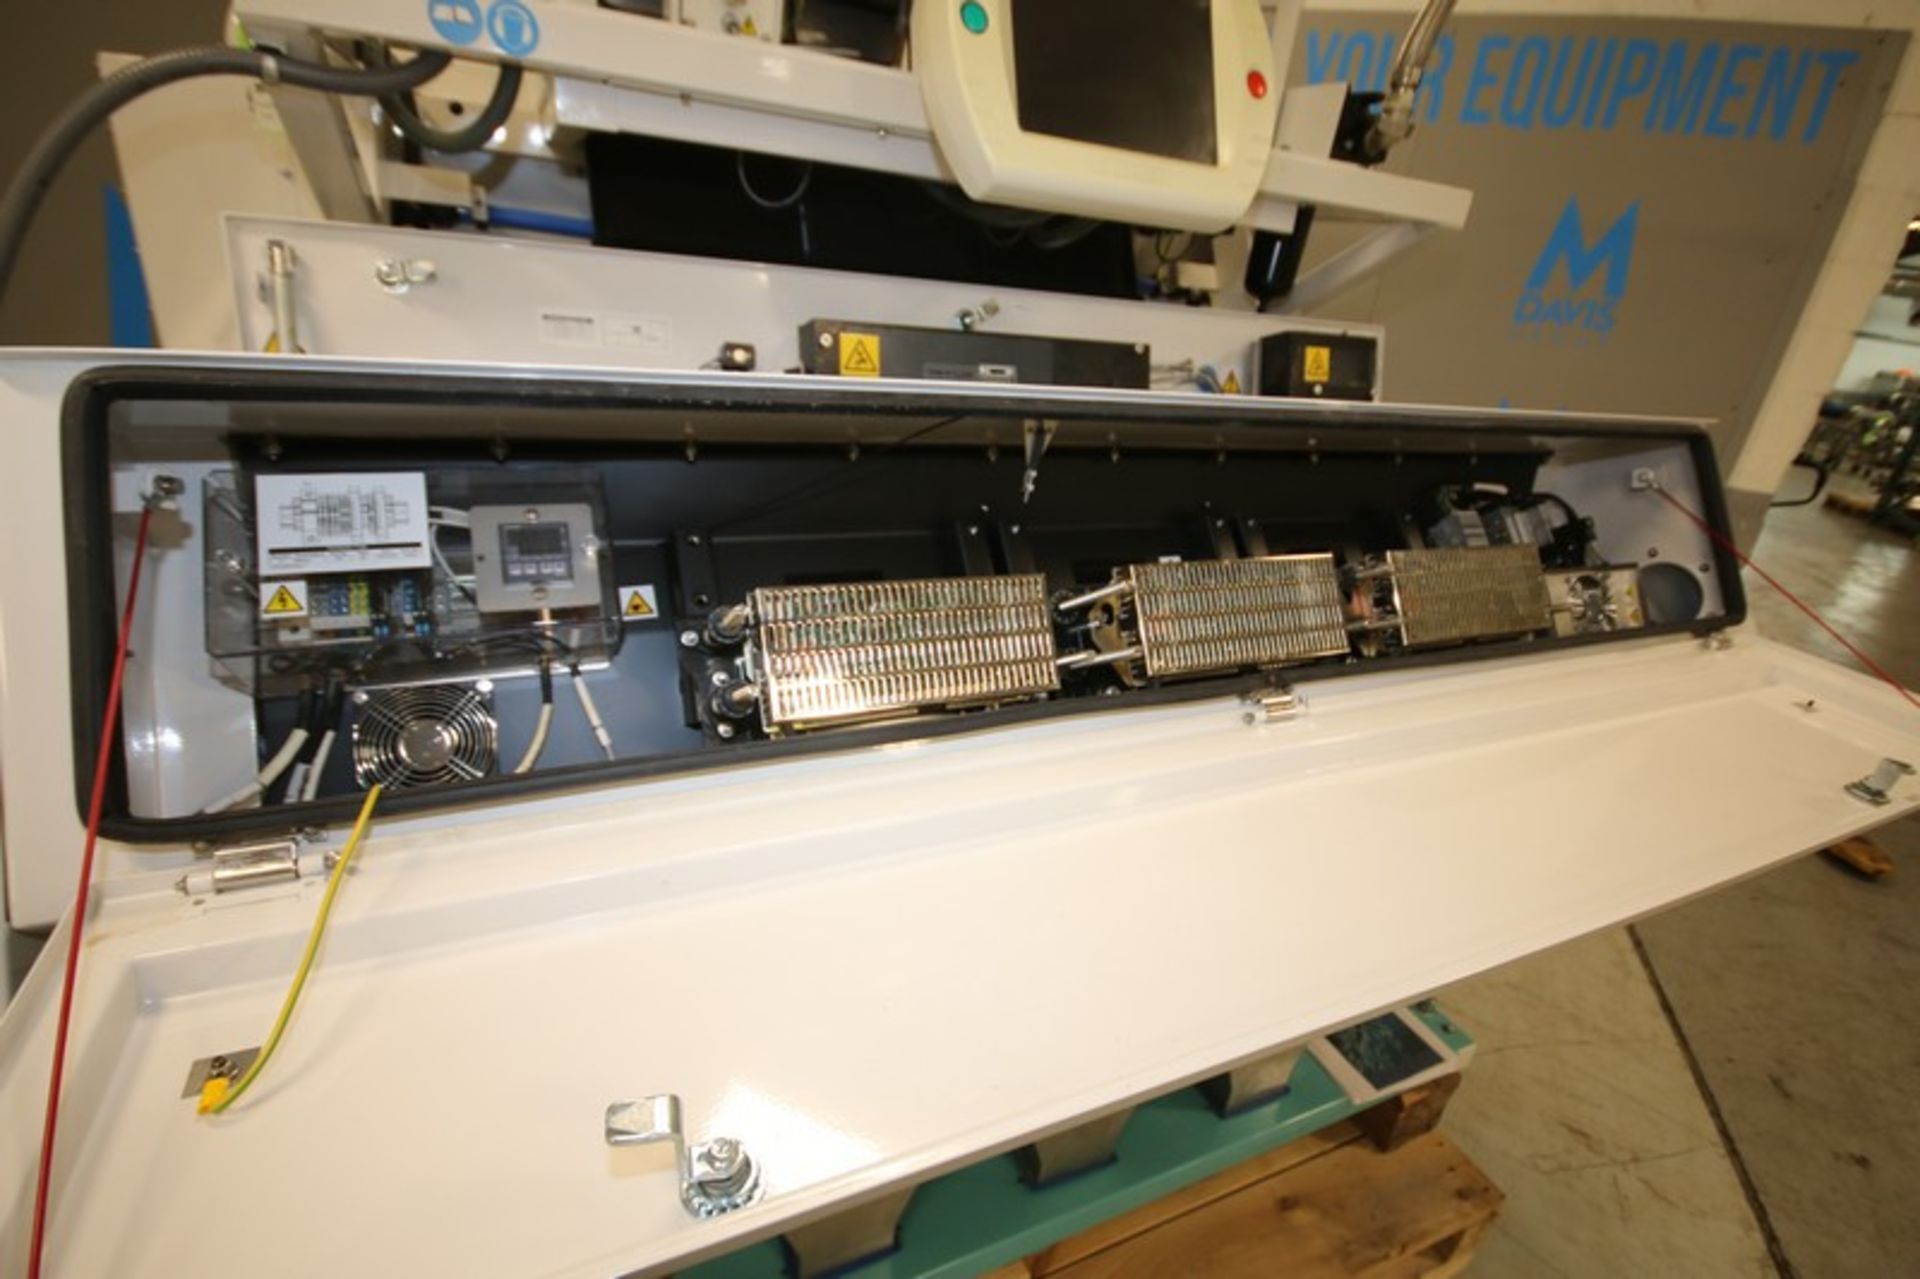 Buhler Optical Sorter, Model-Sorter Z, Model No. Z+1RBL, SN Z5961, with Touch Pad Display, 200-240V, - Image 4 of 12